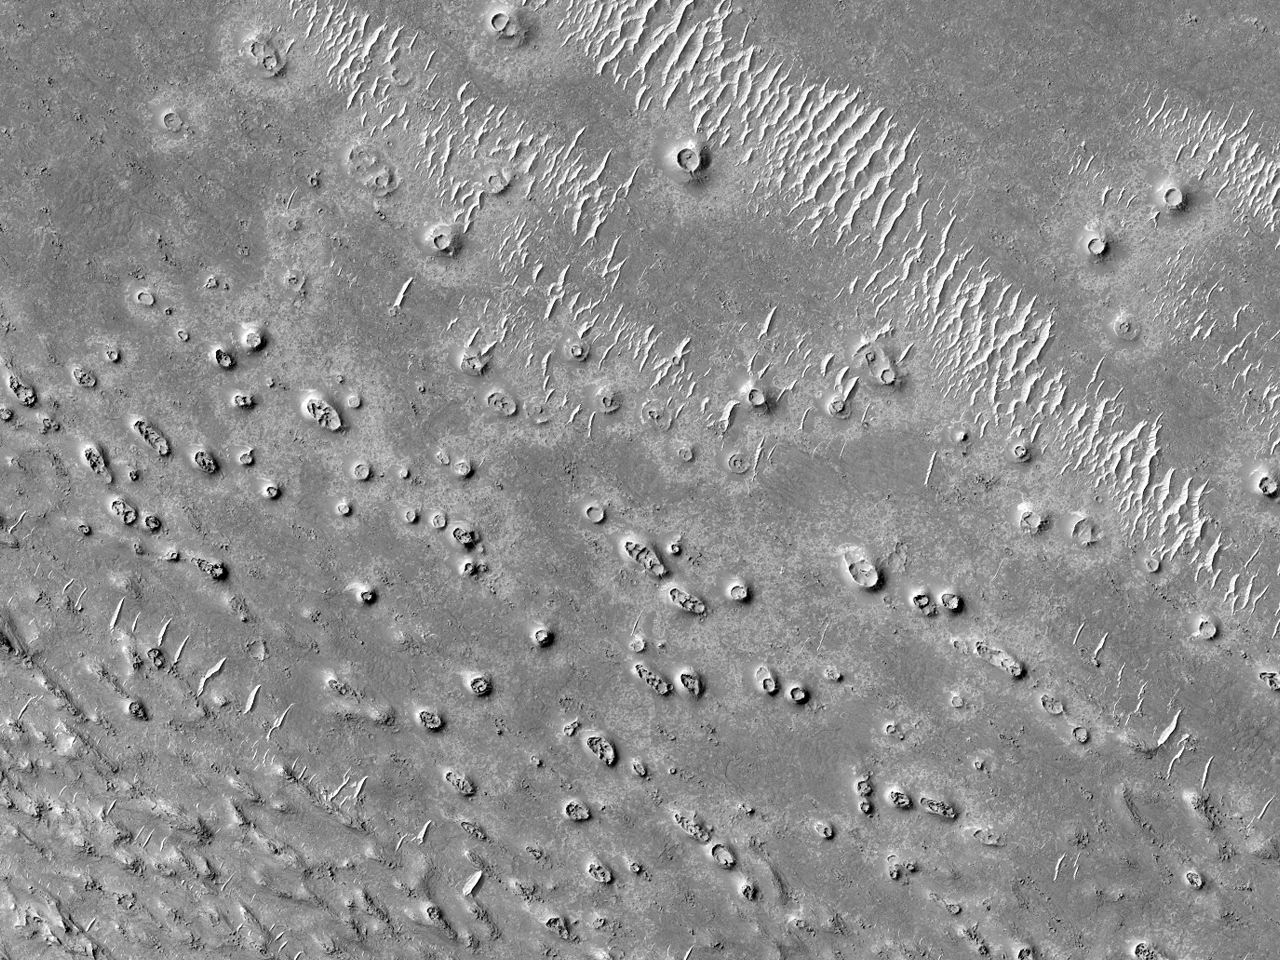 埃律西昂平原“Elysium Planitia” 地区的环状、锥状物